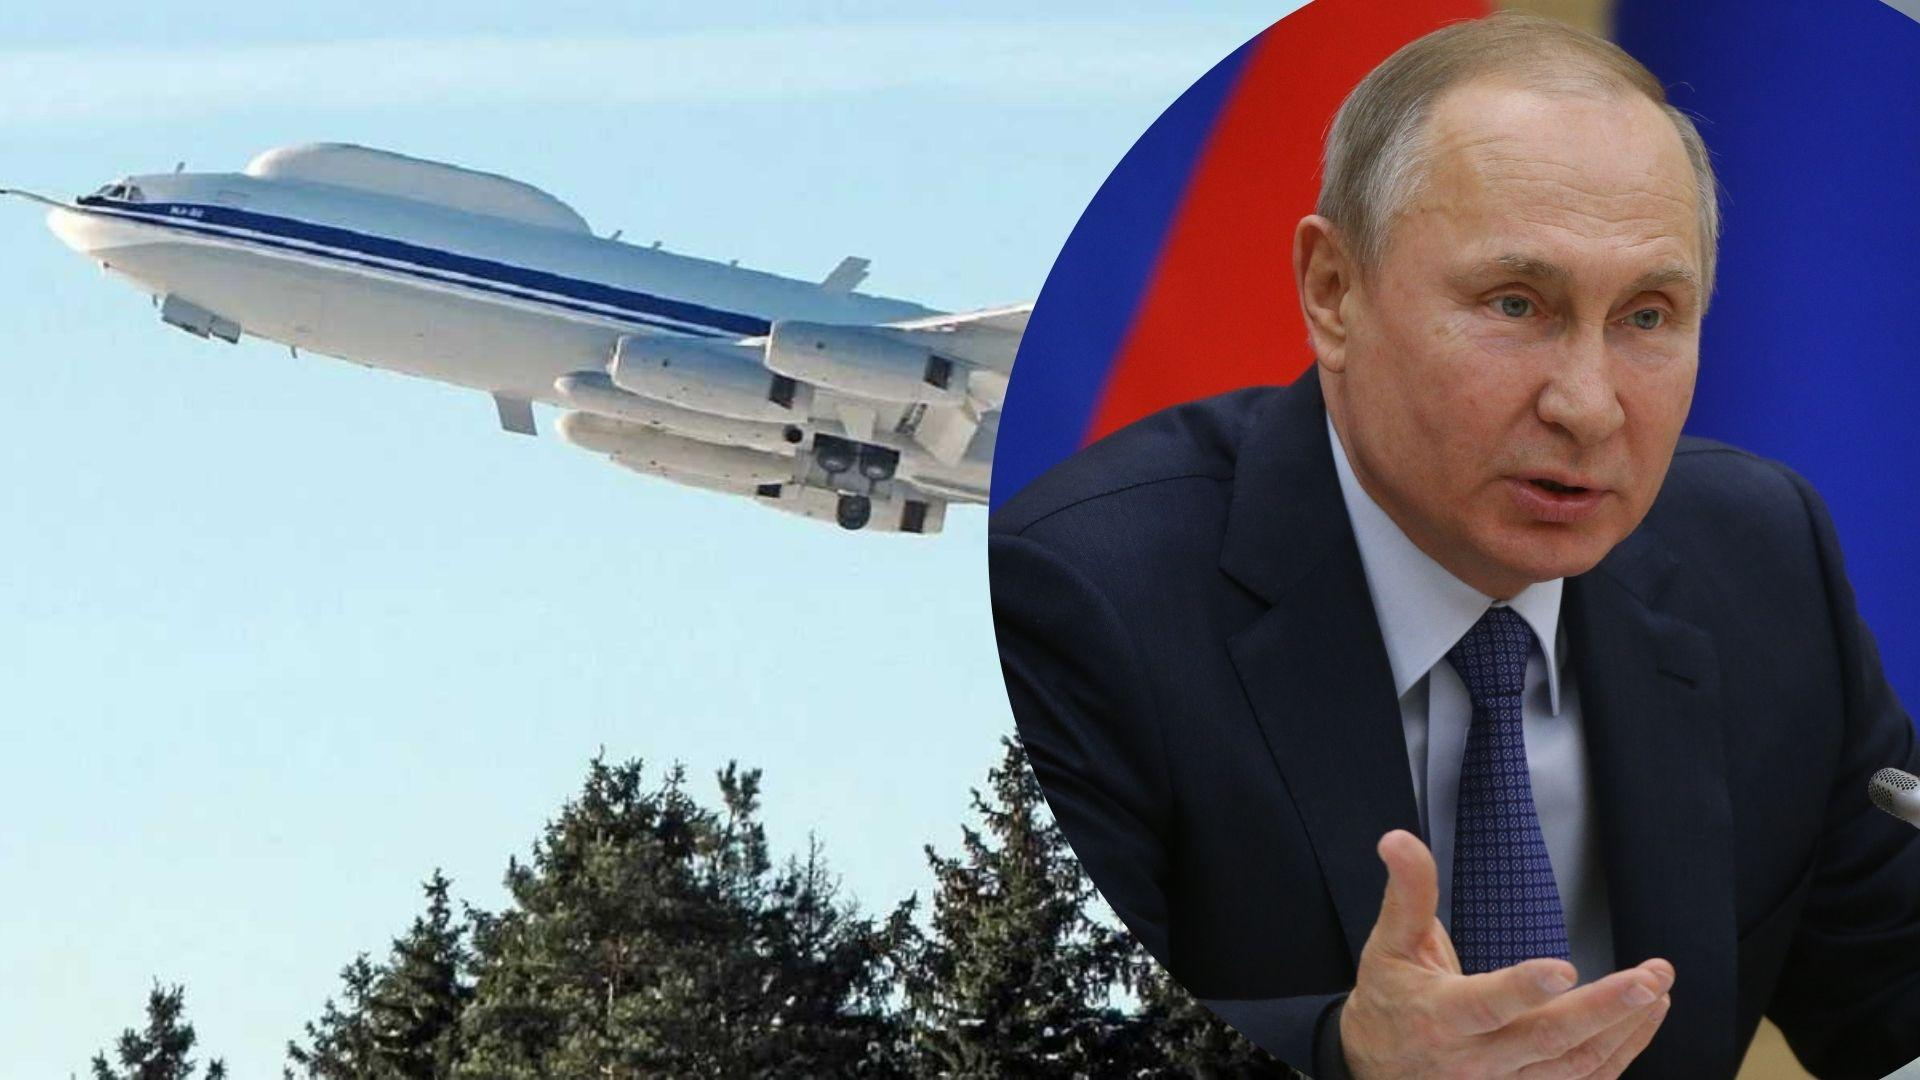 Самолет "судного дня" Путина был неисправен, – почему не показали авиацию в Москве